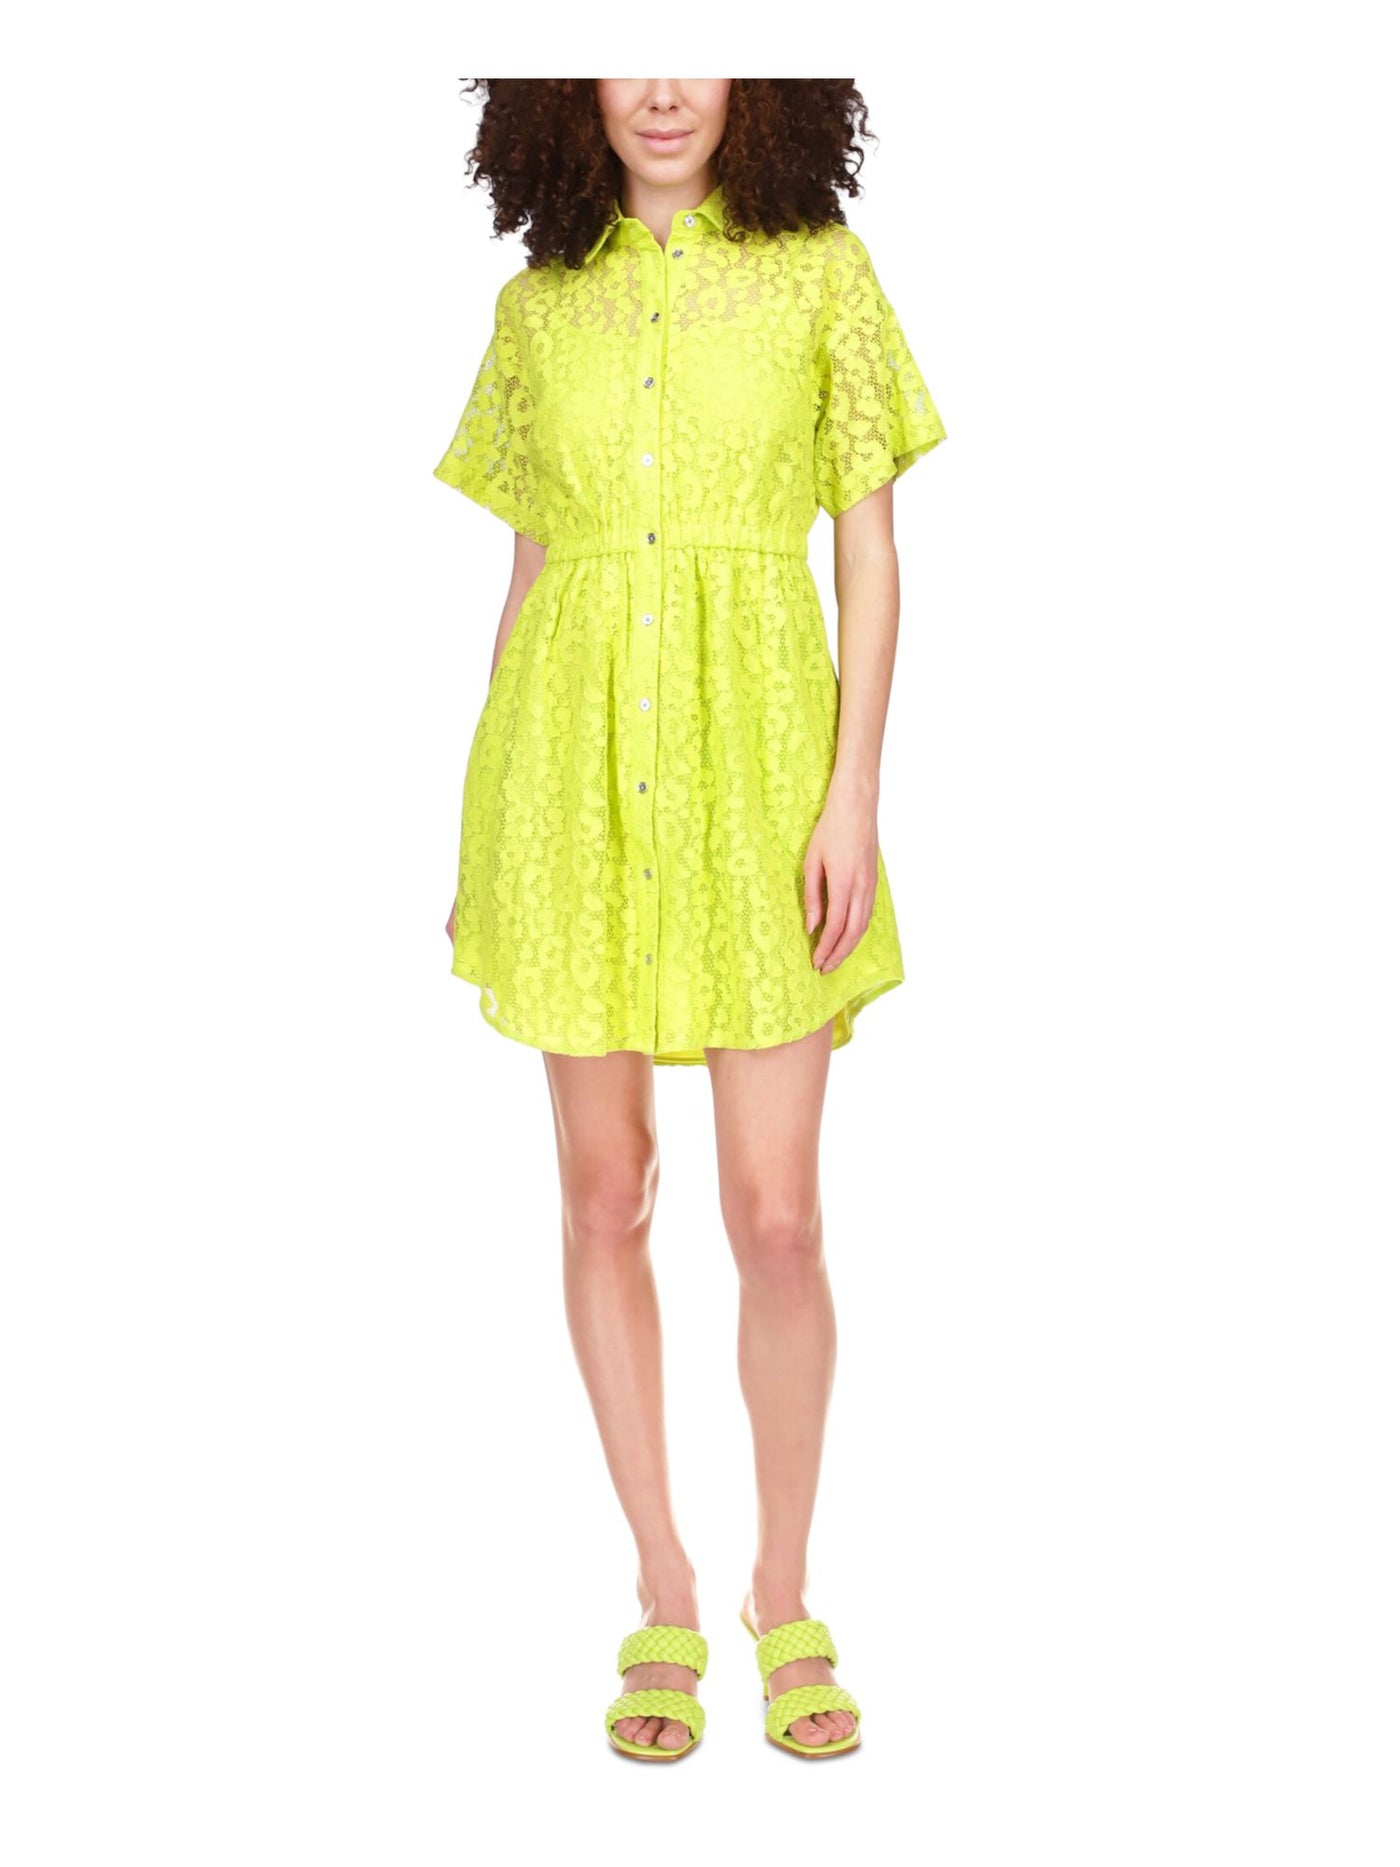 MICHAEL KORS Womens Green Lace Elastic Waist Curved Hem Lined Short Sleeve Point Collar Short Party Shirt Dress XL